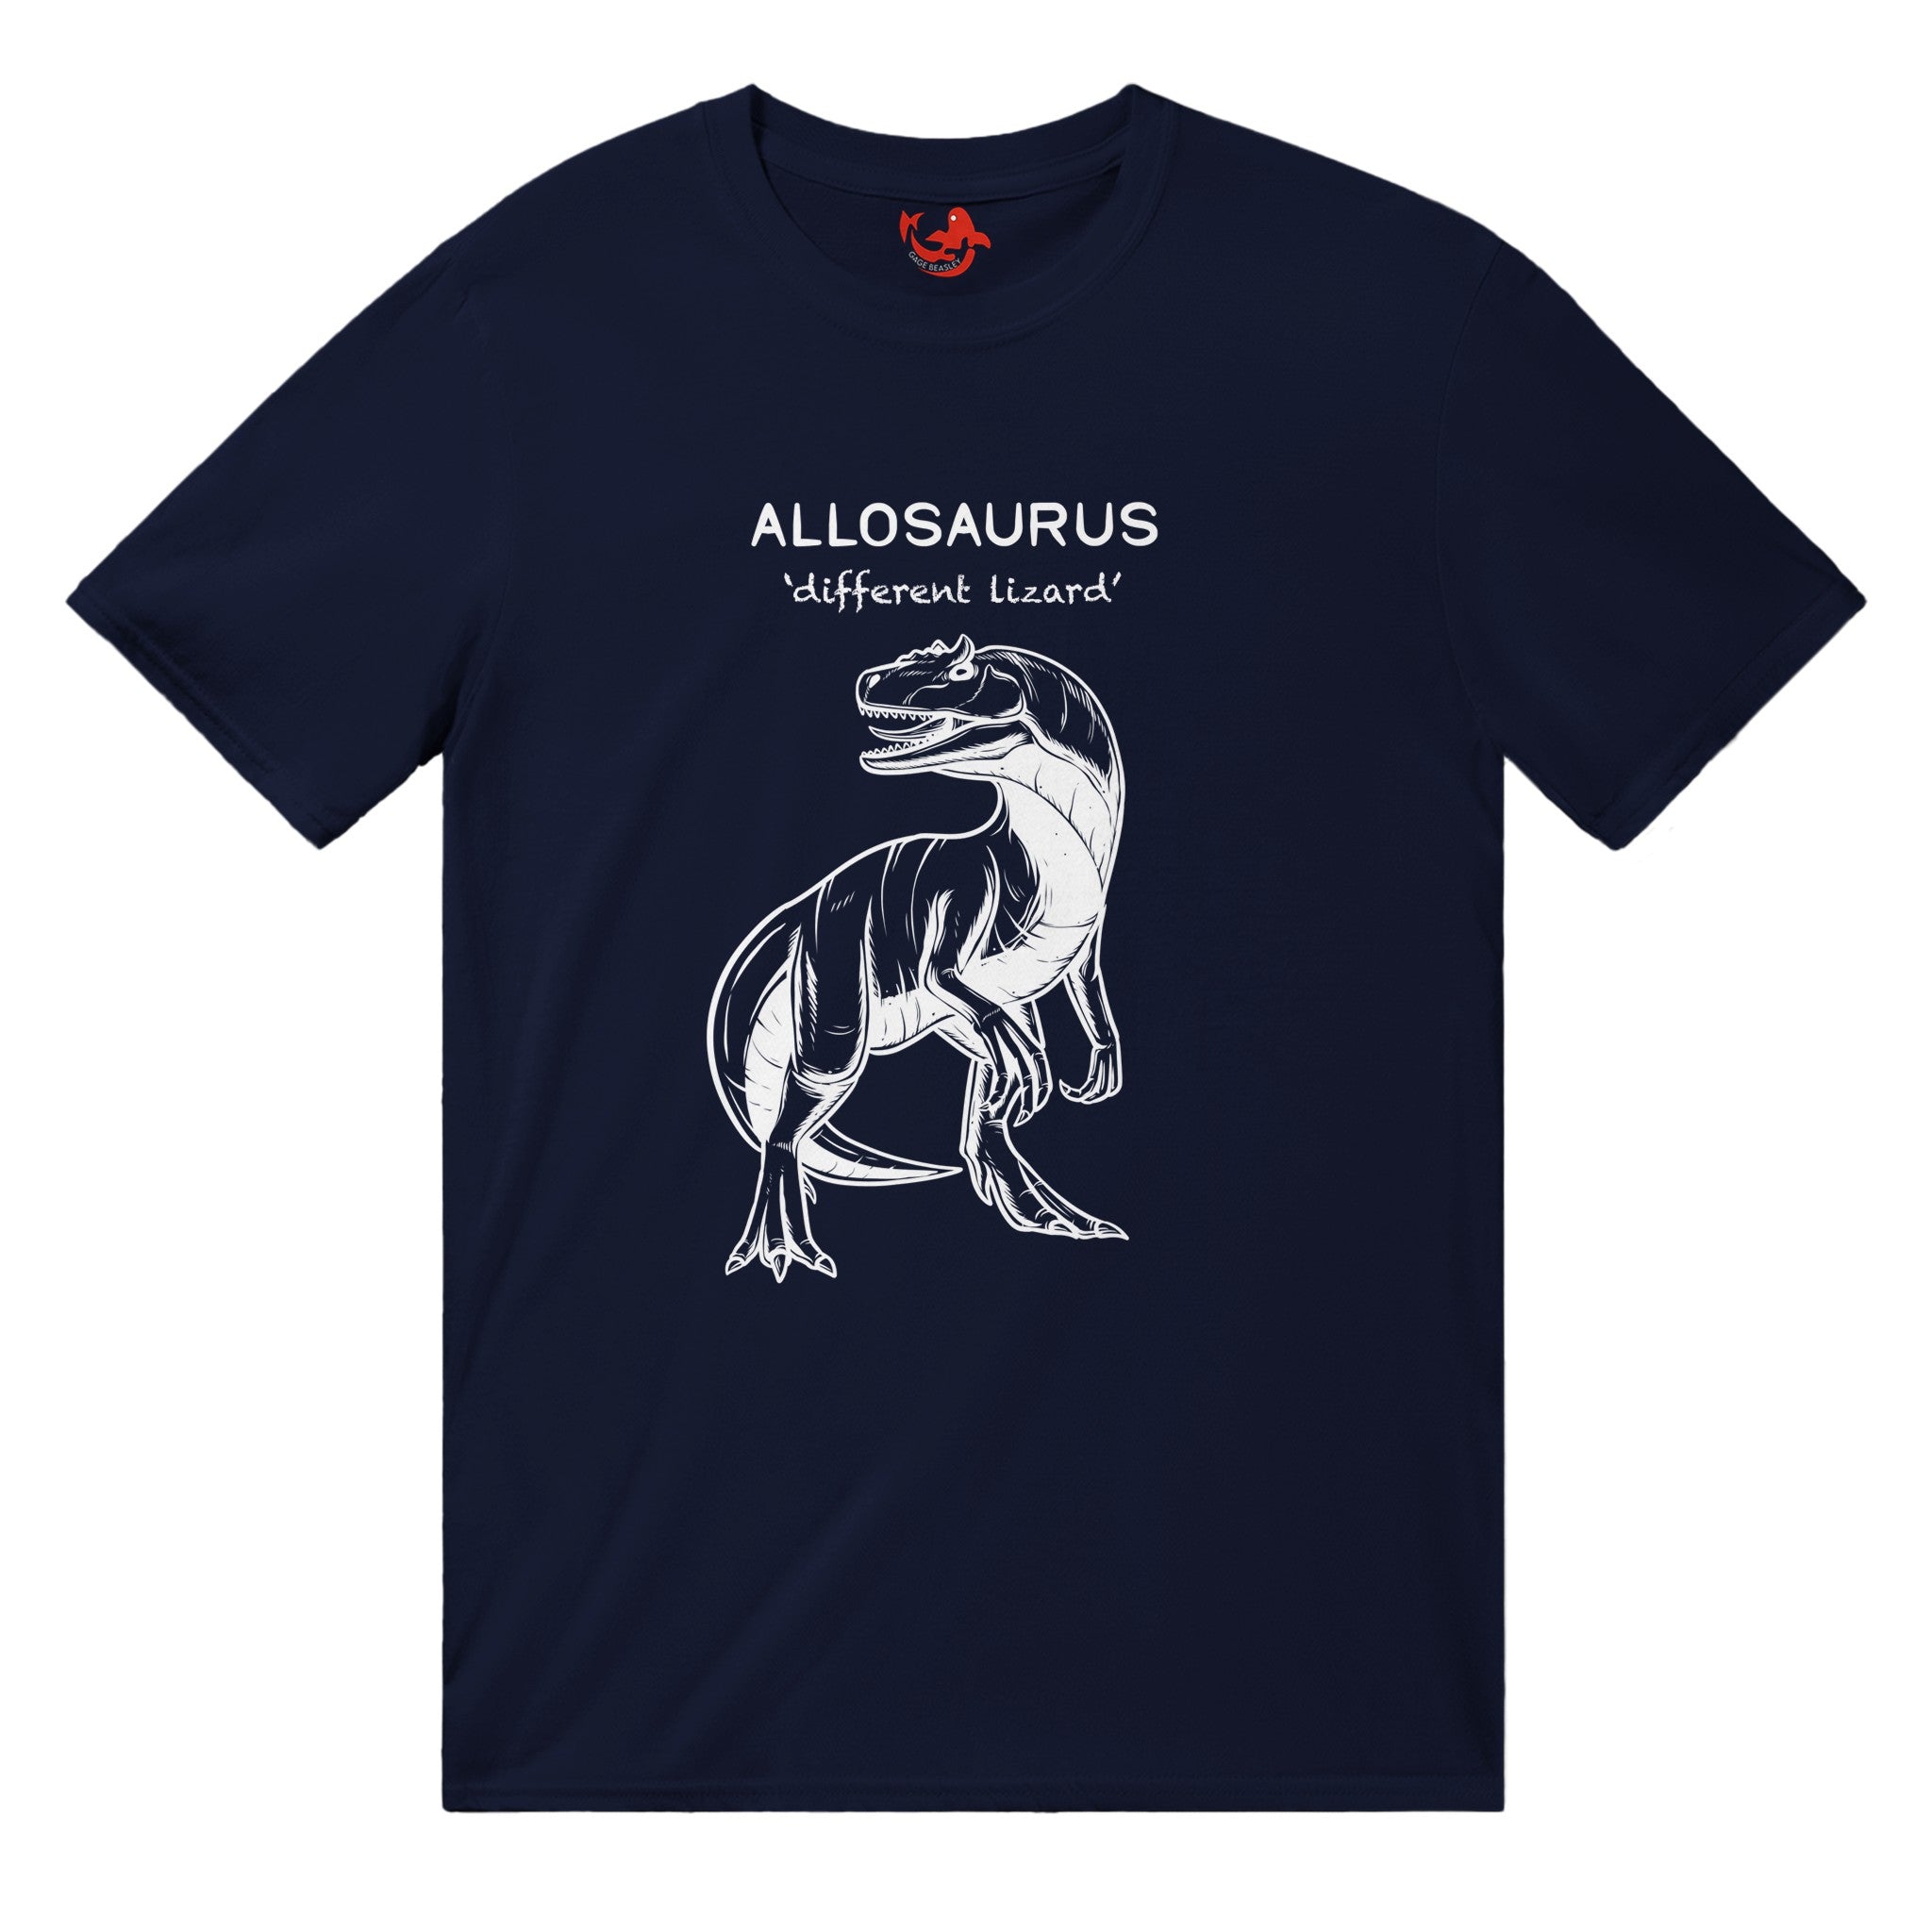 Allosaurus Dinosaur Unisex T-Shirt